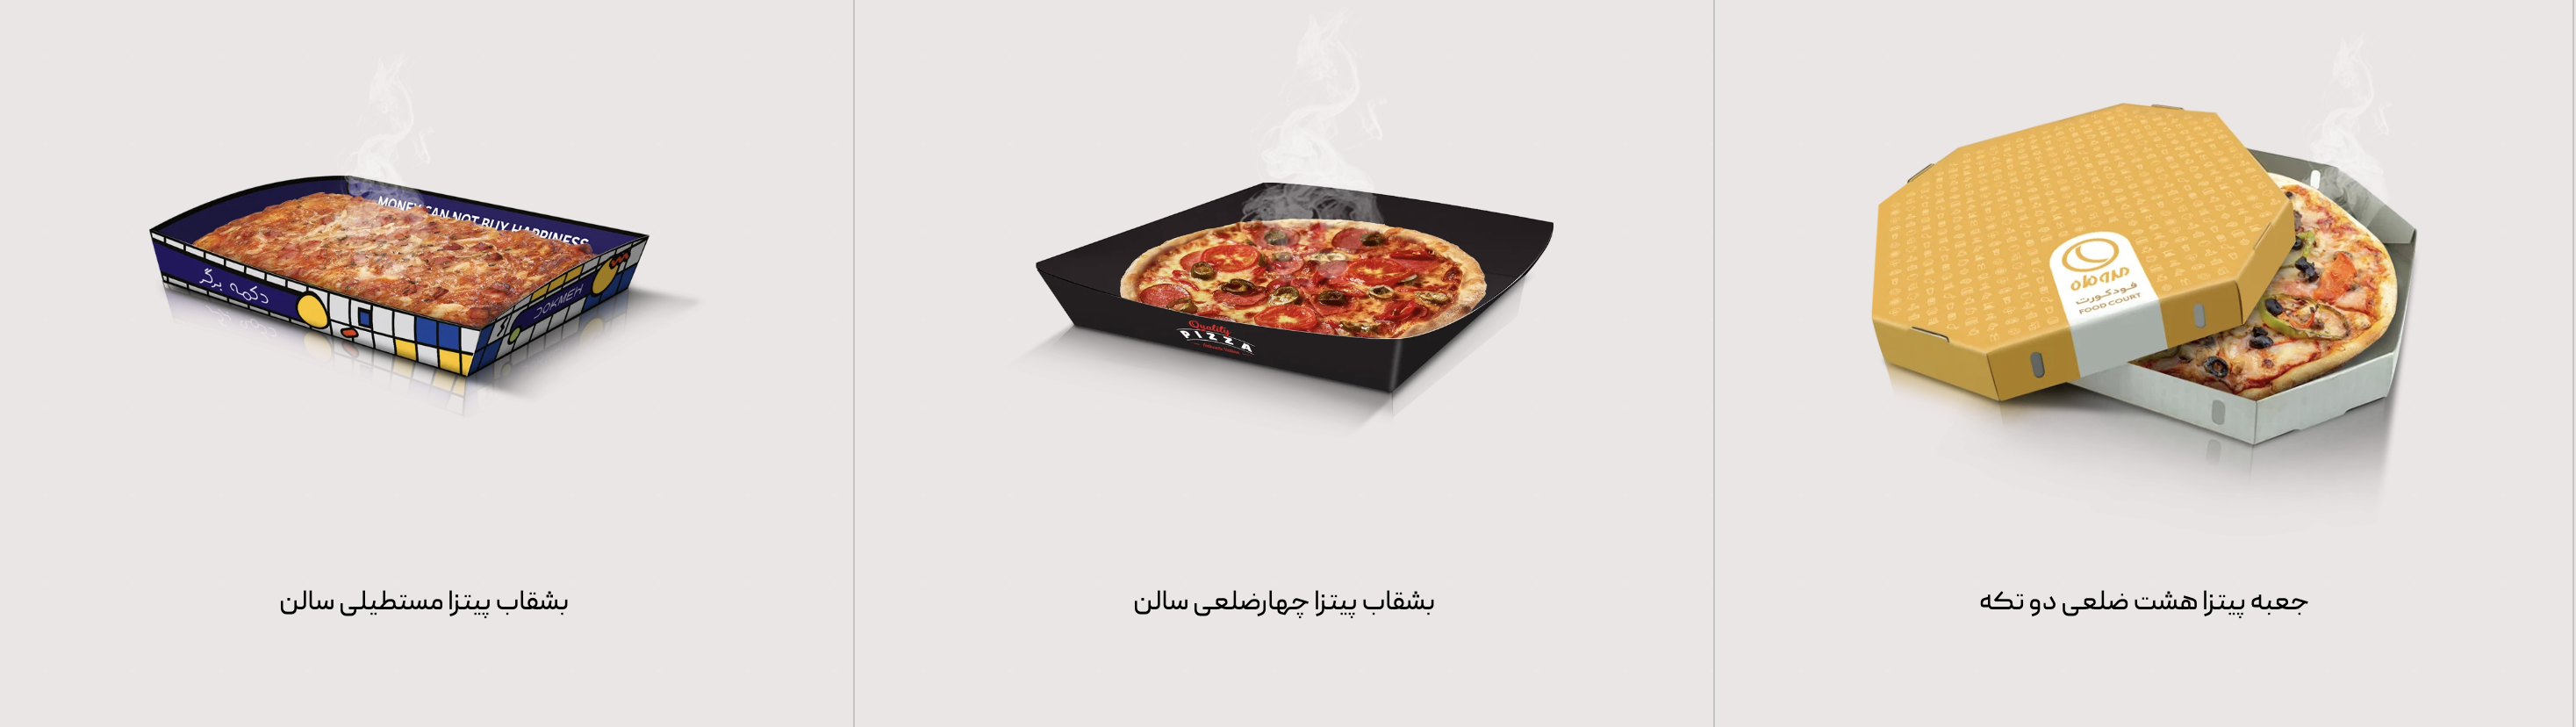 مدل های جعبه پیتزا خام طراحی شده ۲